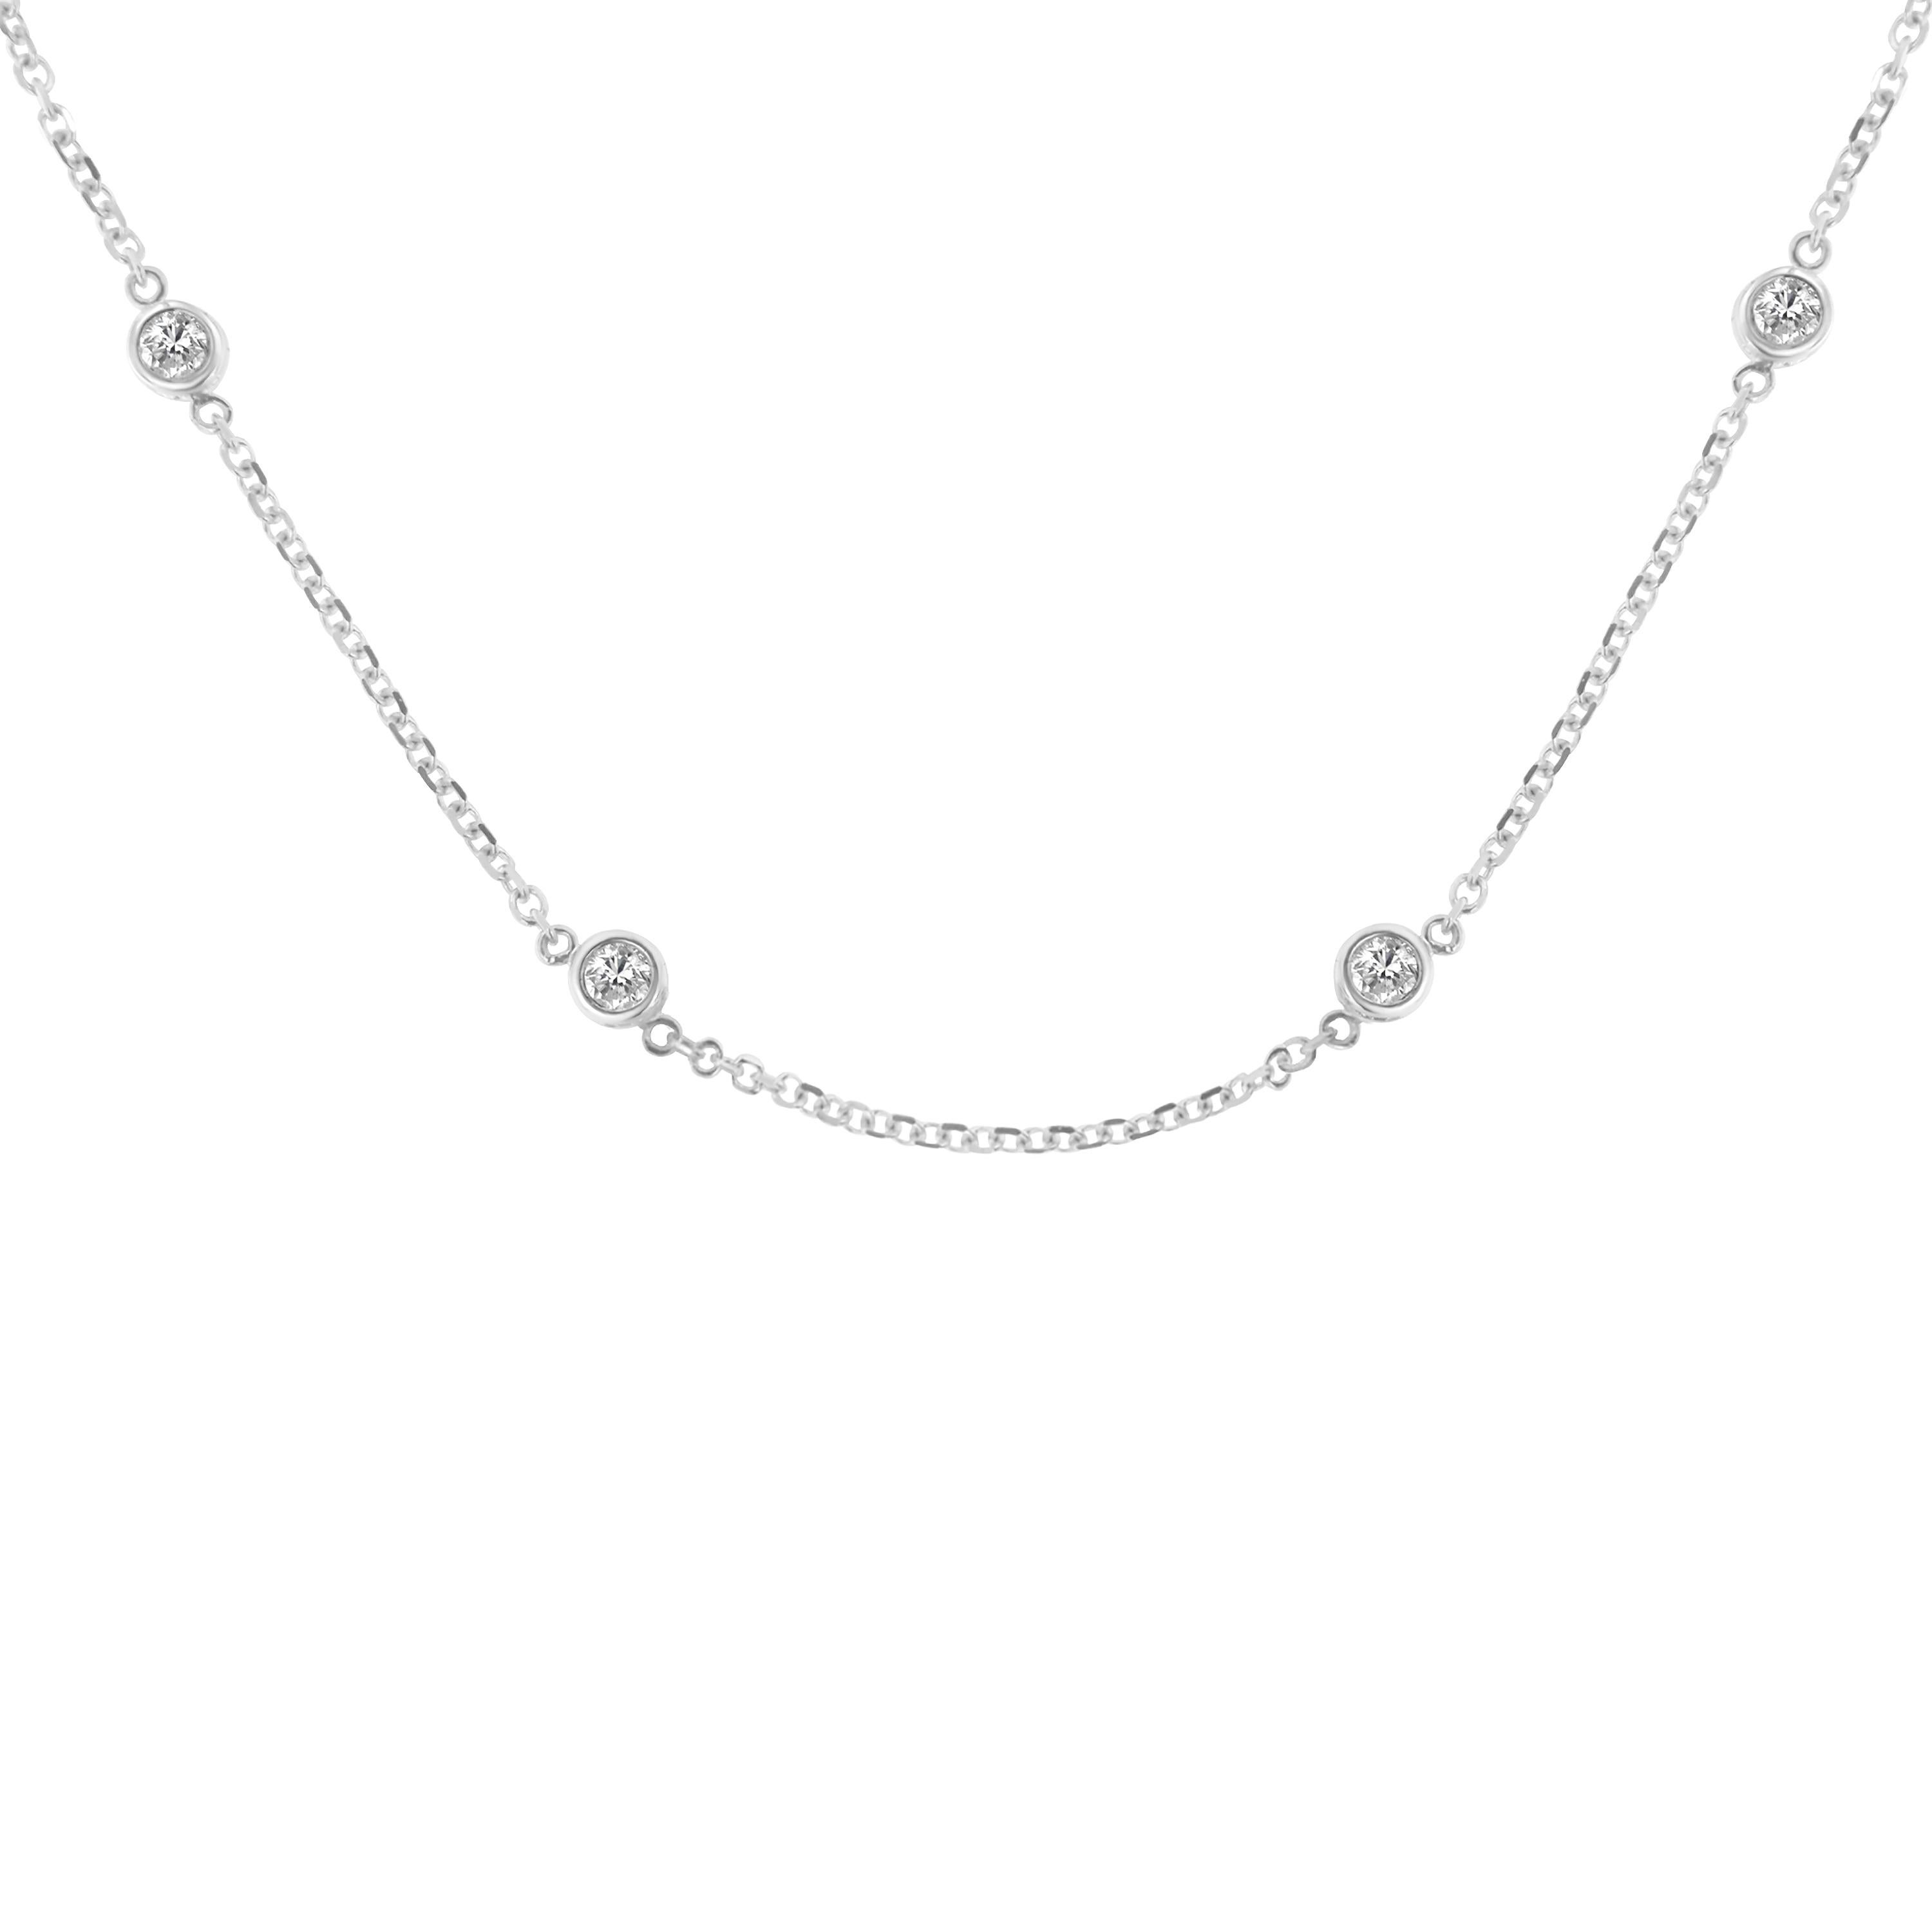 2 carat diamond station necklace